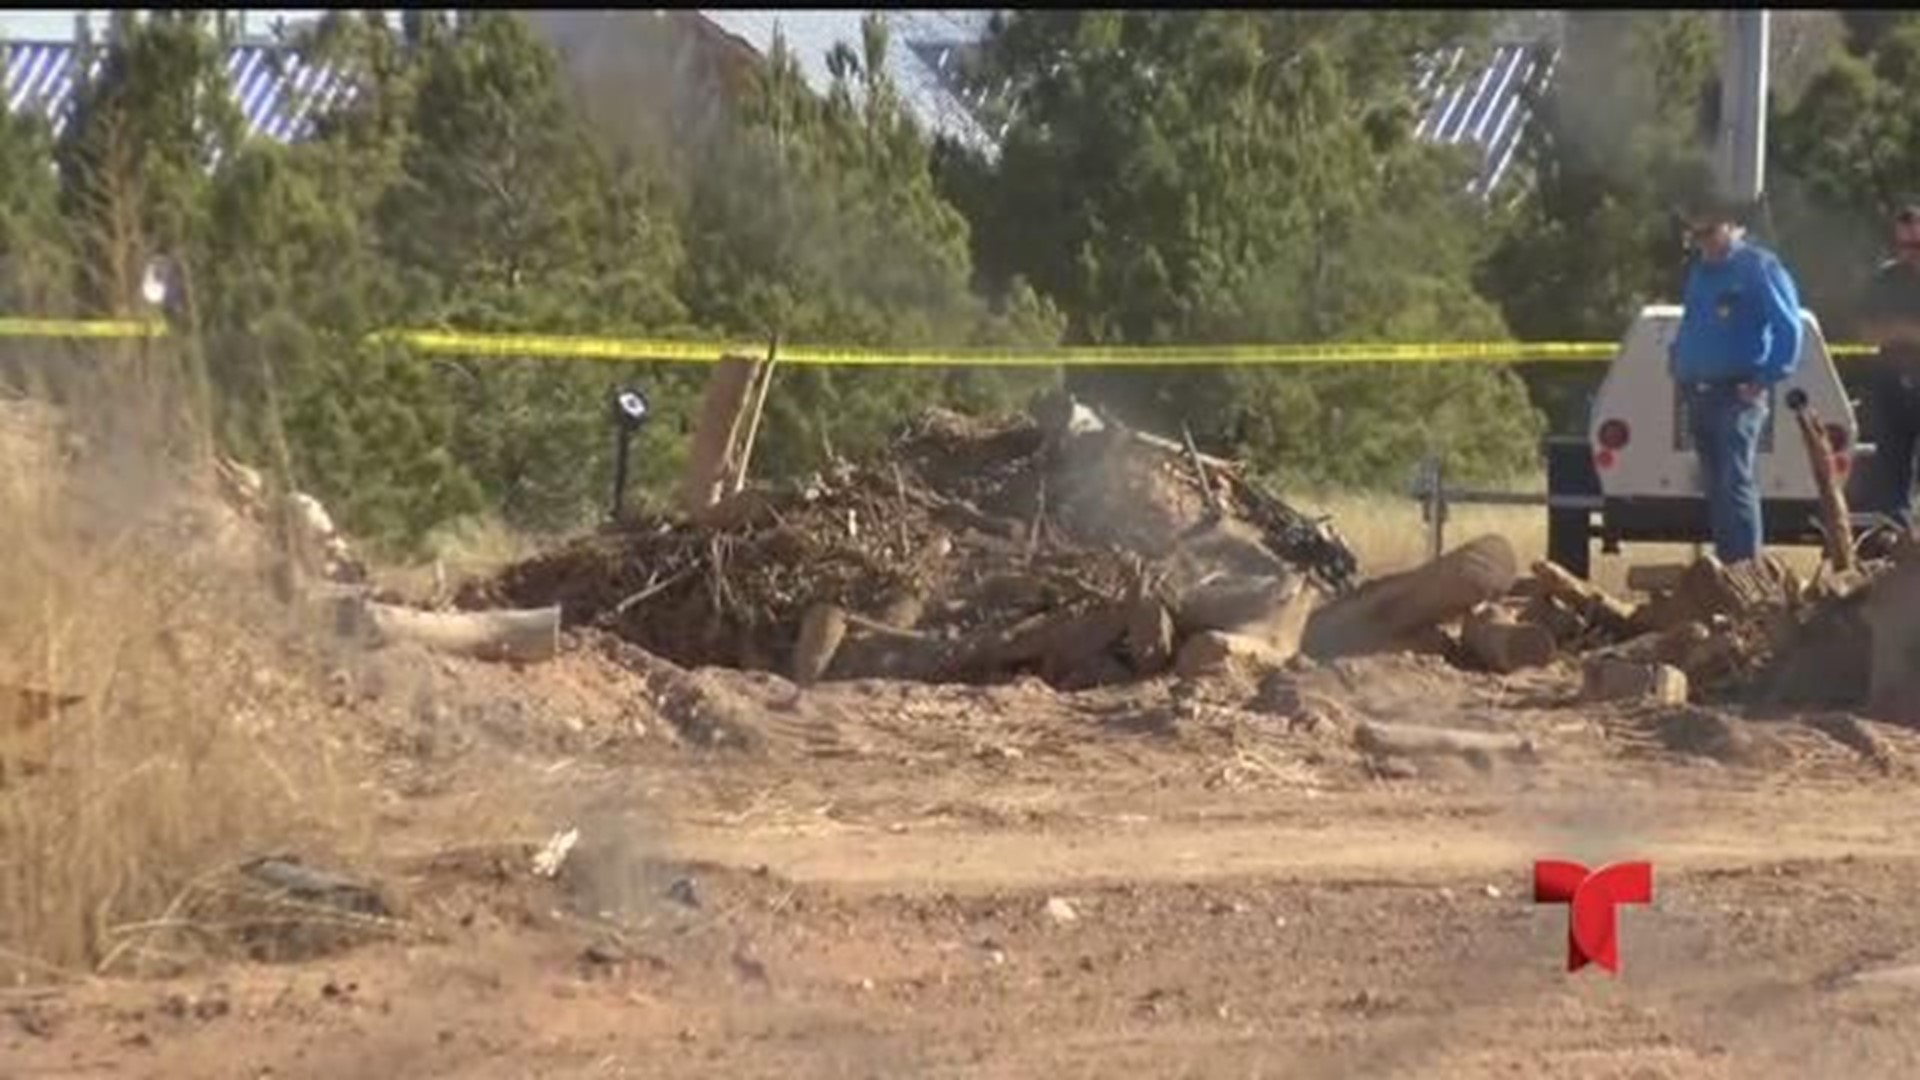 Autoridades en el condado Midland investigan el hallazgo de restos humanos